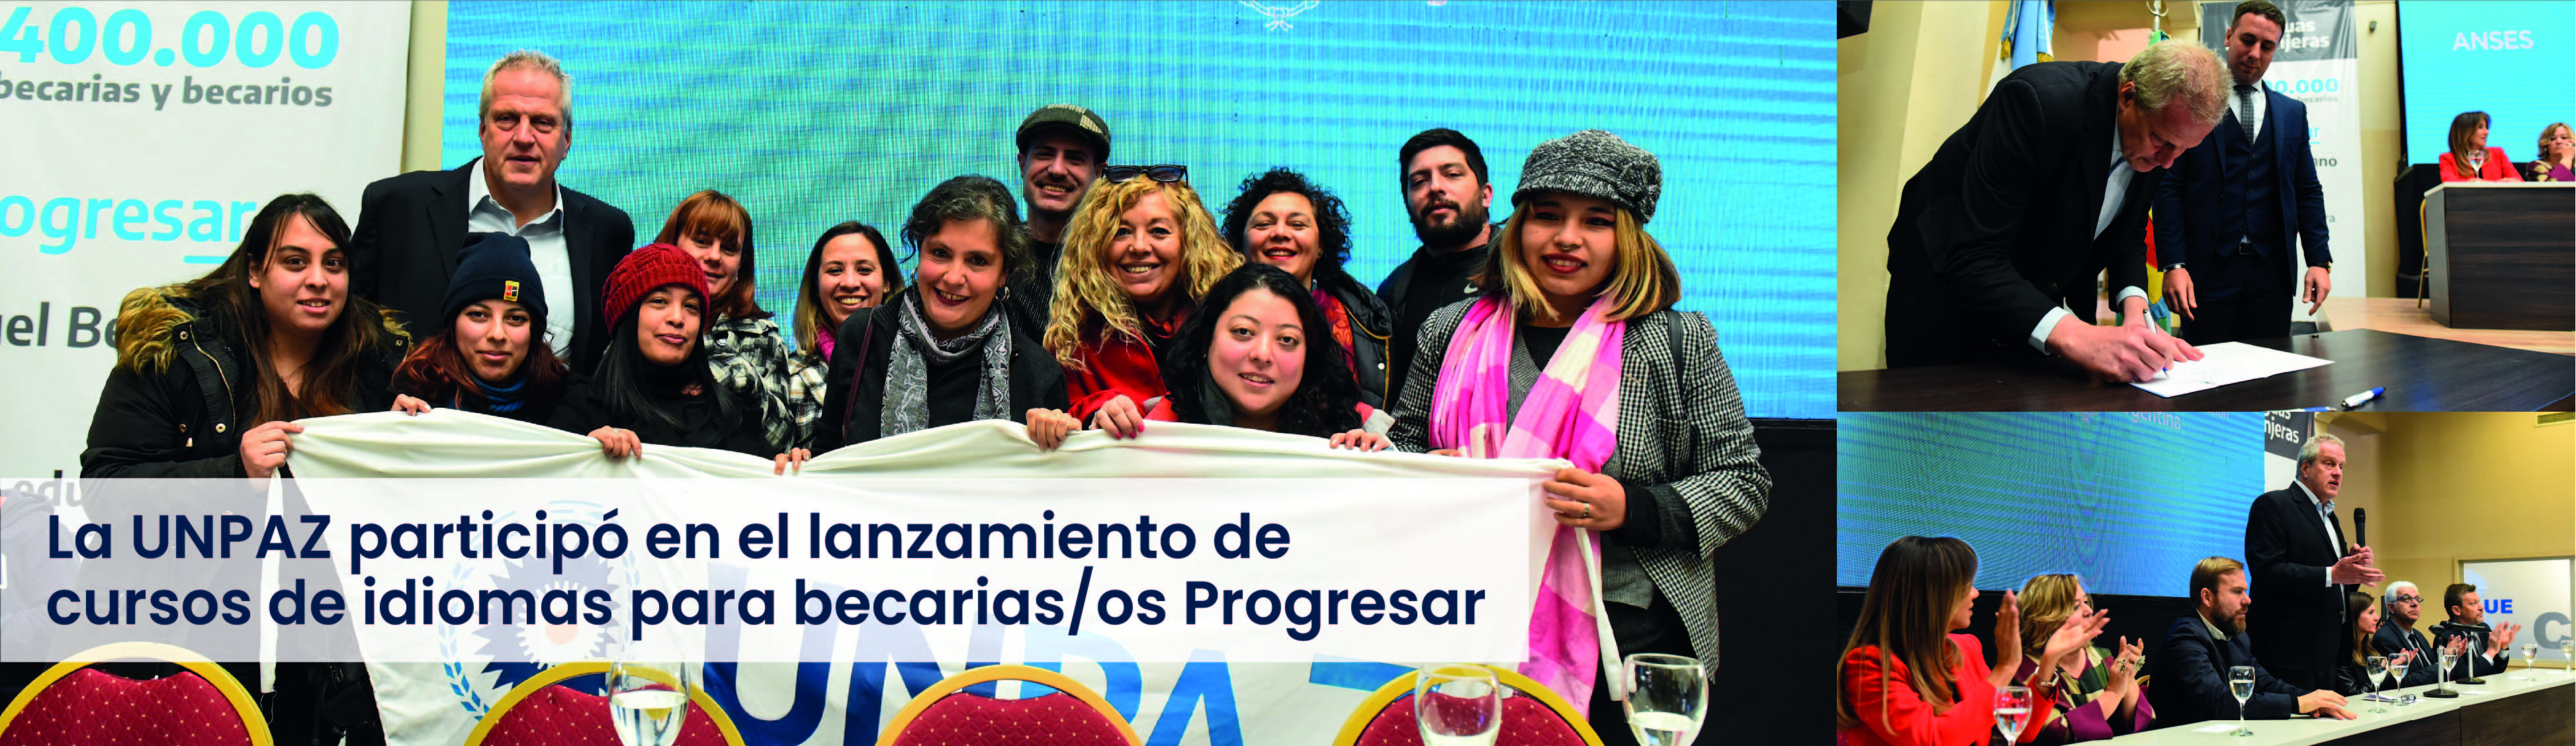 La UNPAZ participó en el lanzamiento de cursos de idiomas para becarias/os Progresar